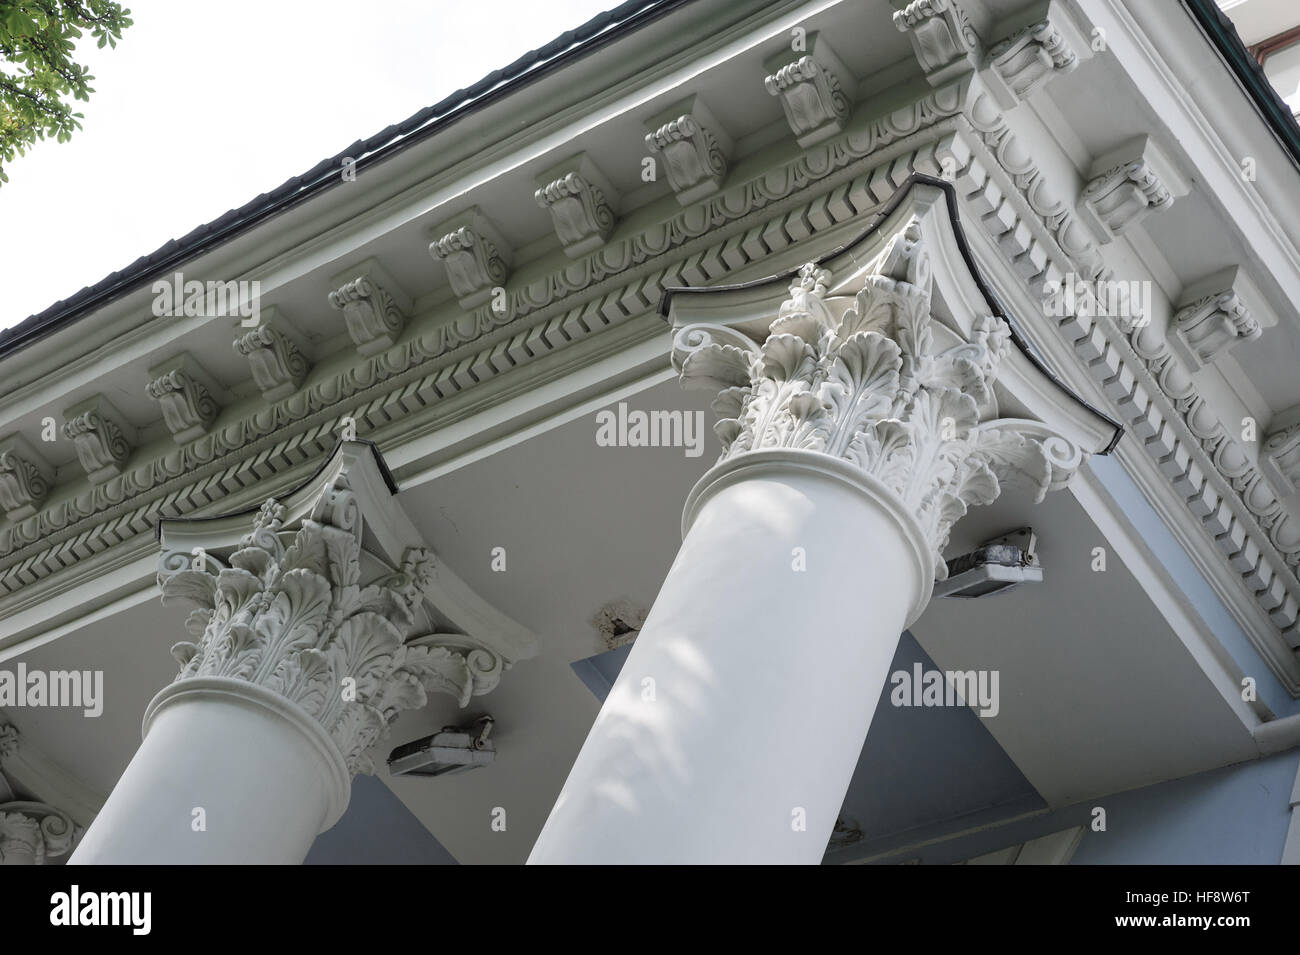 Capital gray closeup Corinthian columns on a building facade Stock Photo